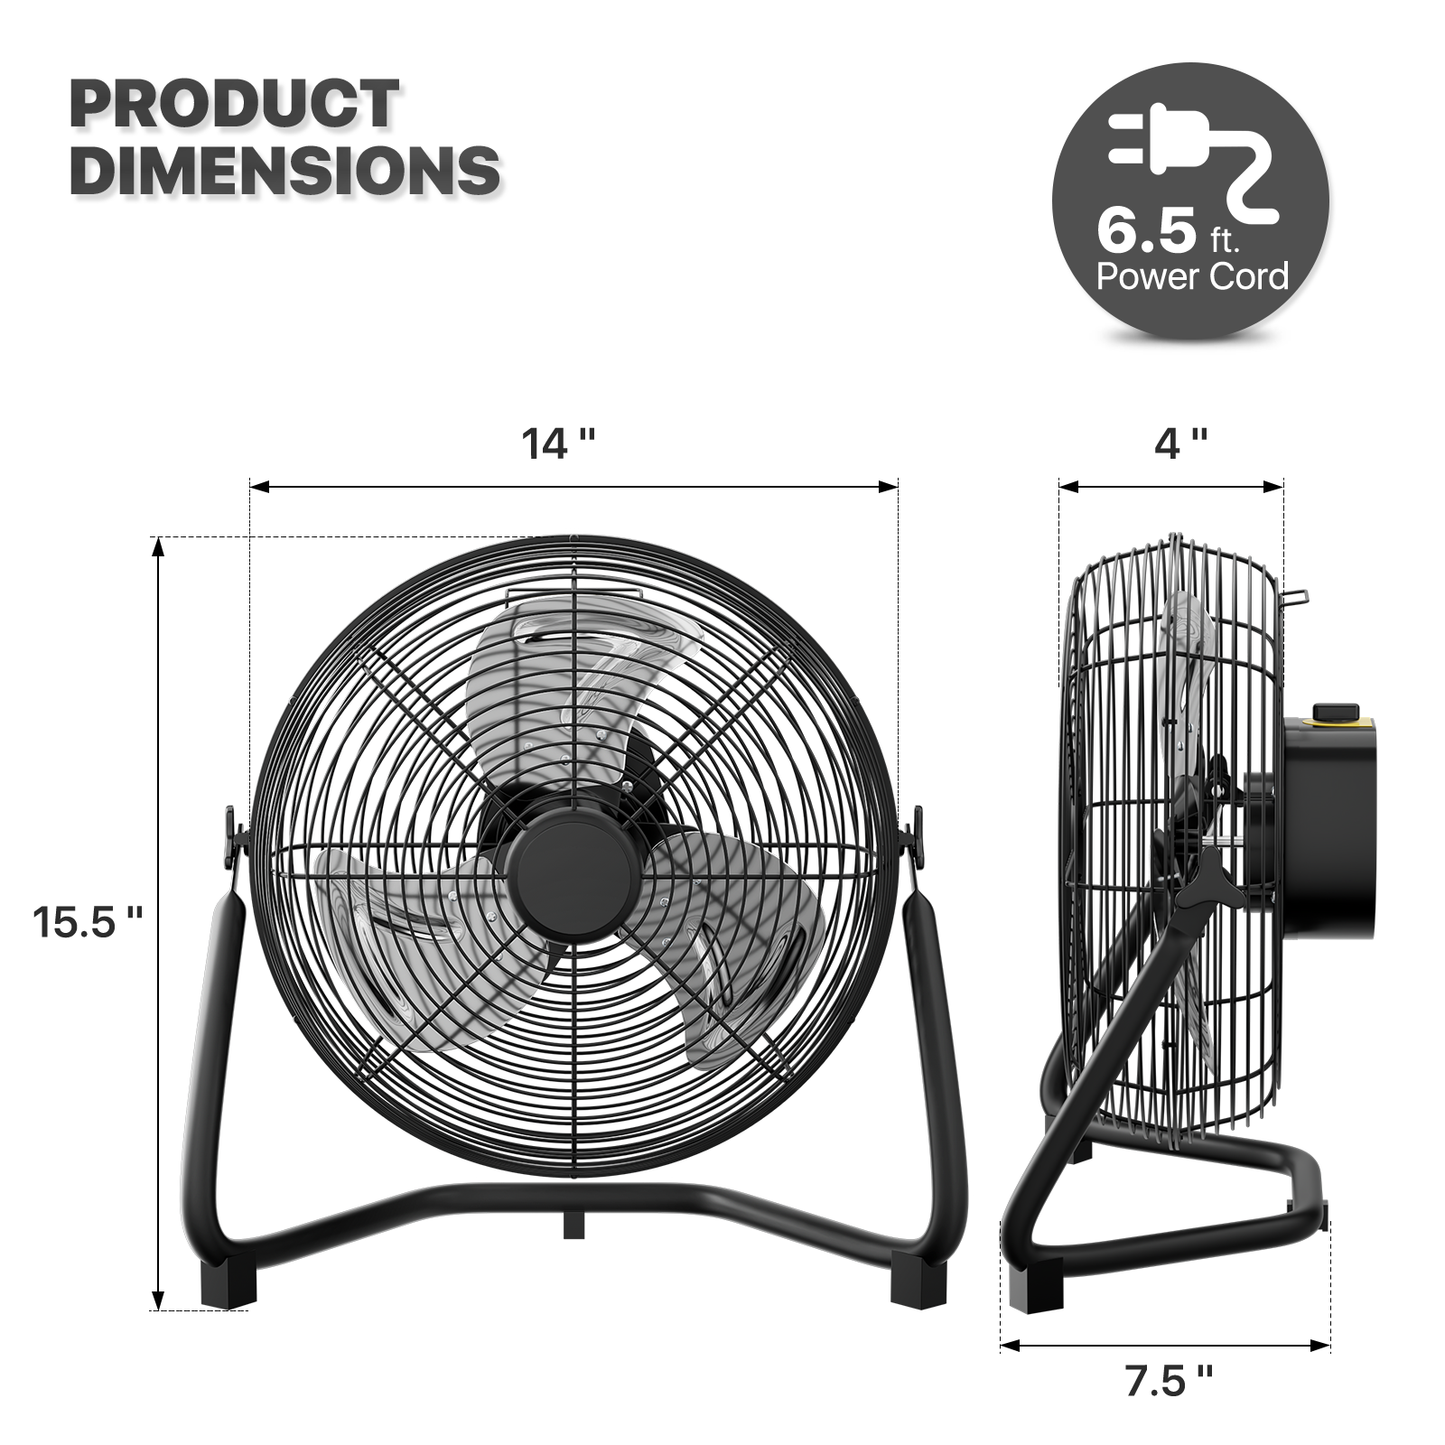 12" Floor Fan - 3 Speeds - Adjustable Tilt